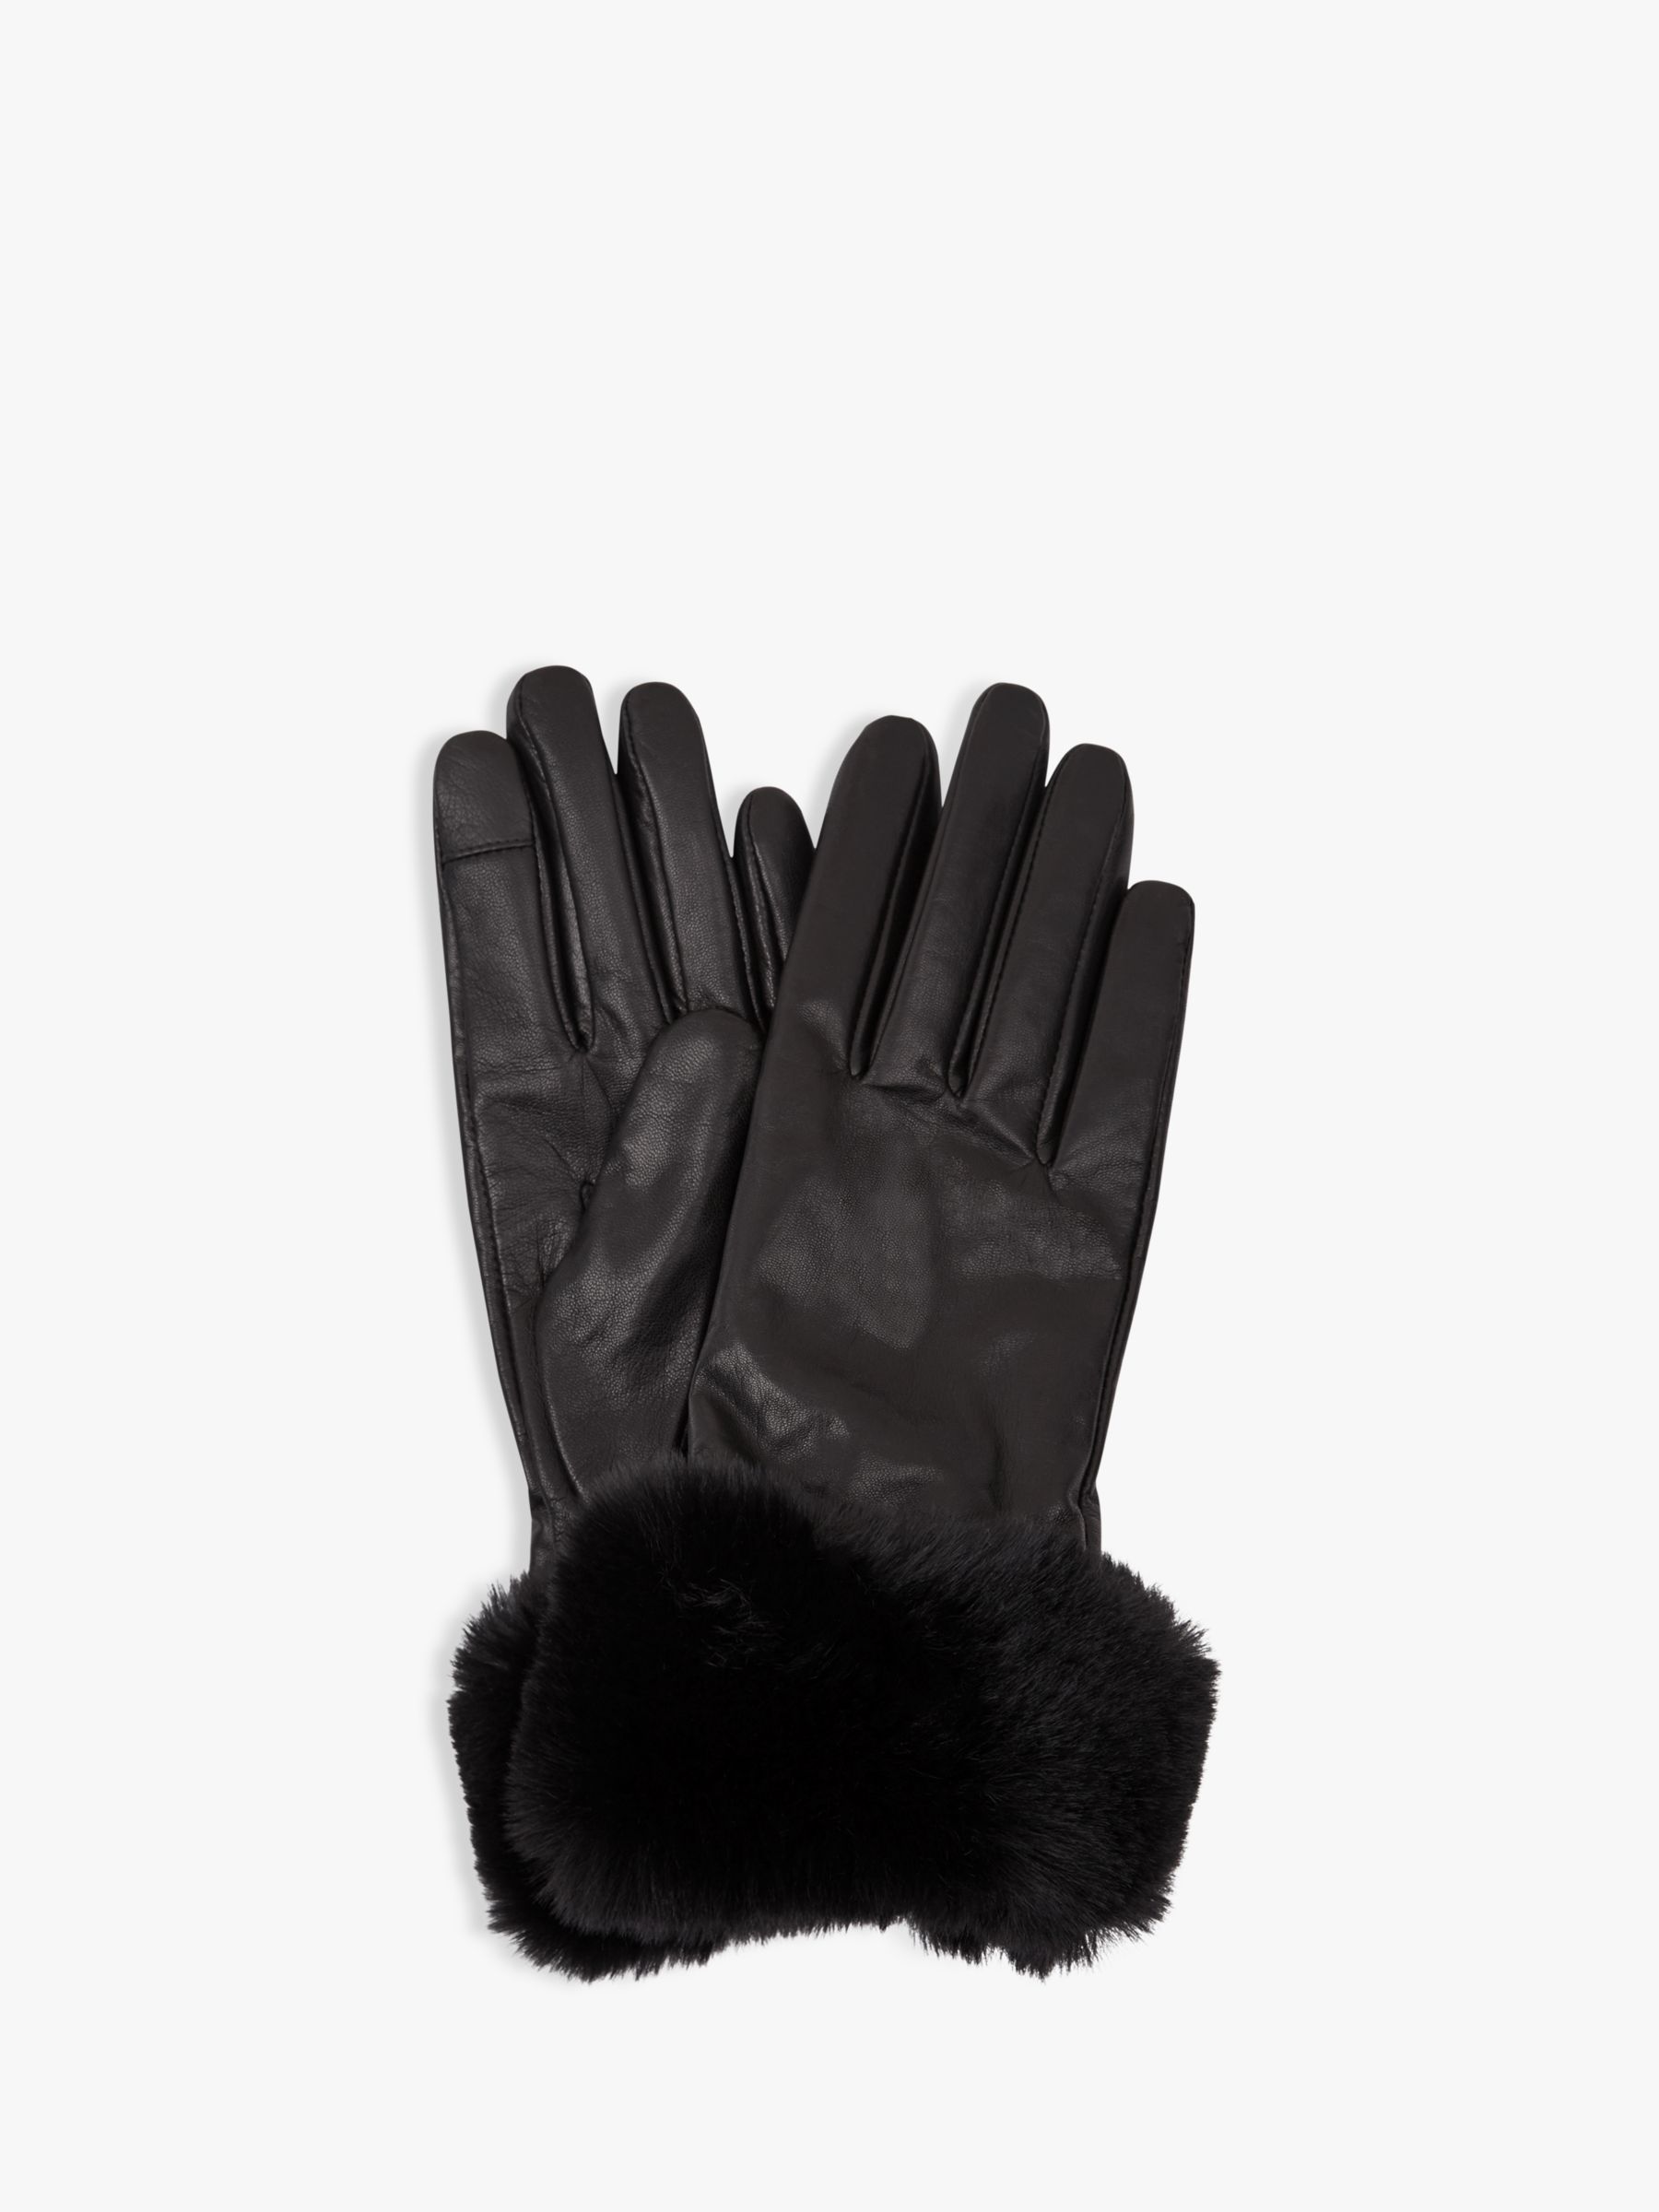 faux fur trim leather gloves